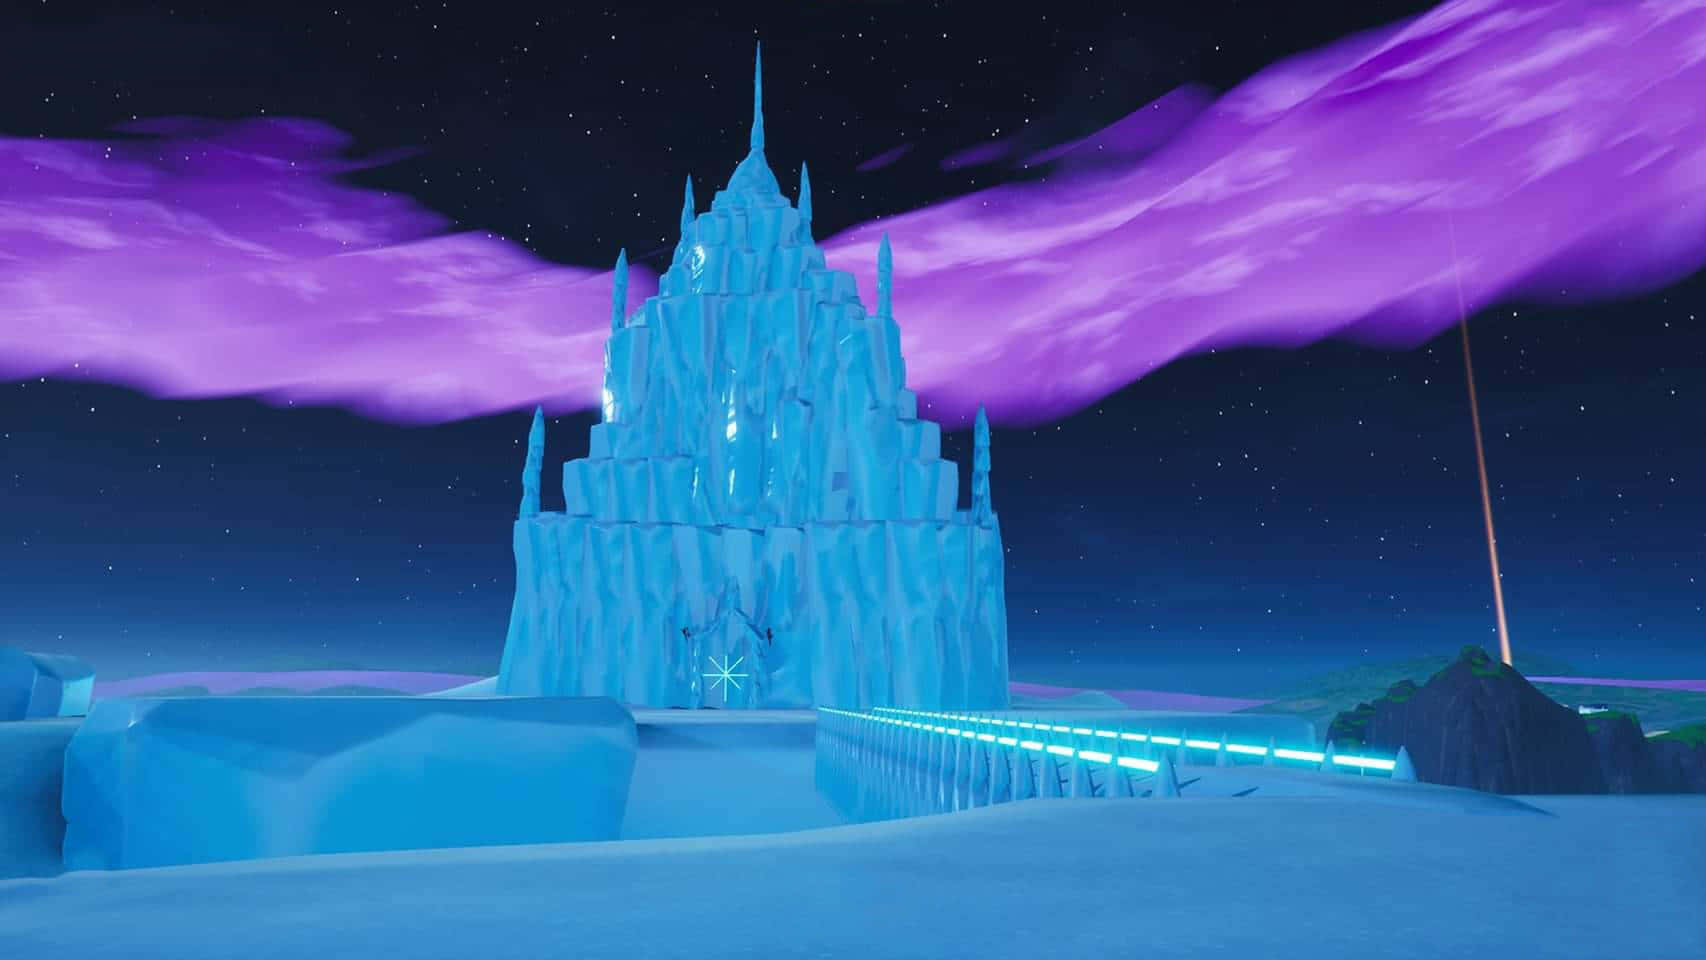 Frozen Castle on a Snowy Night